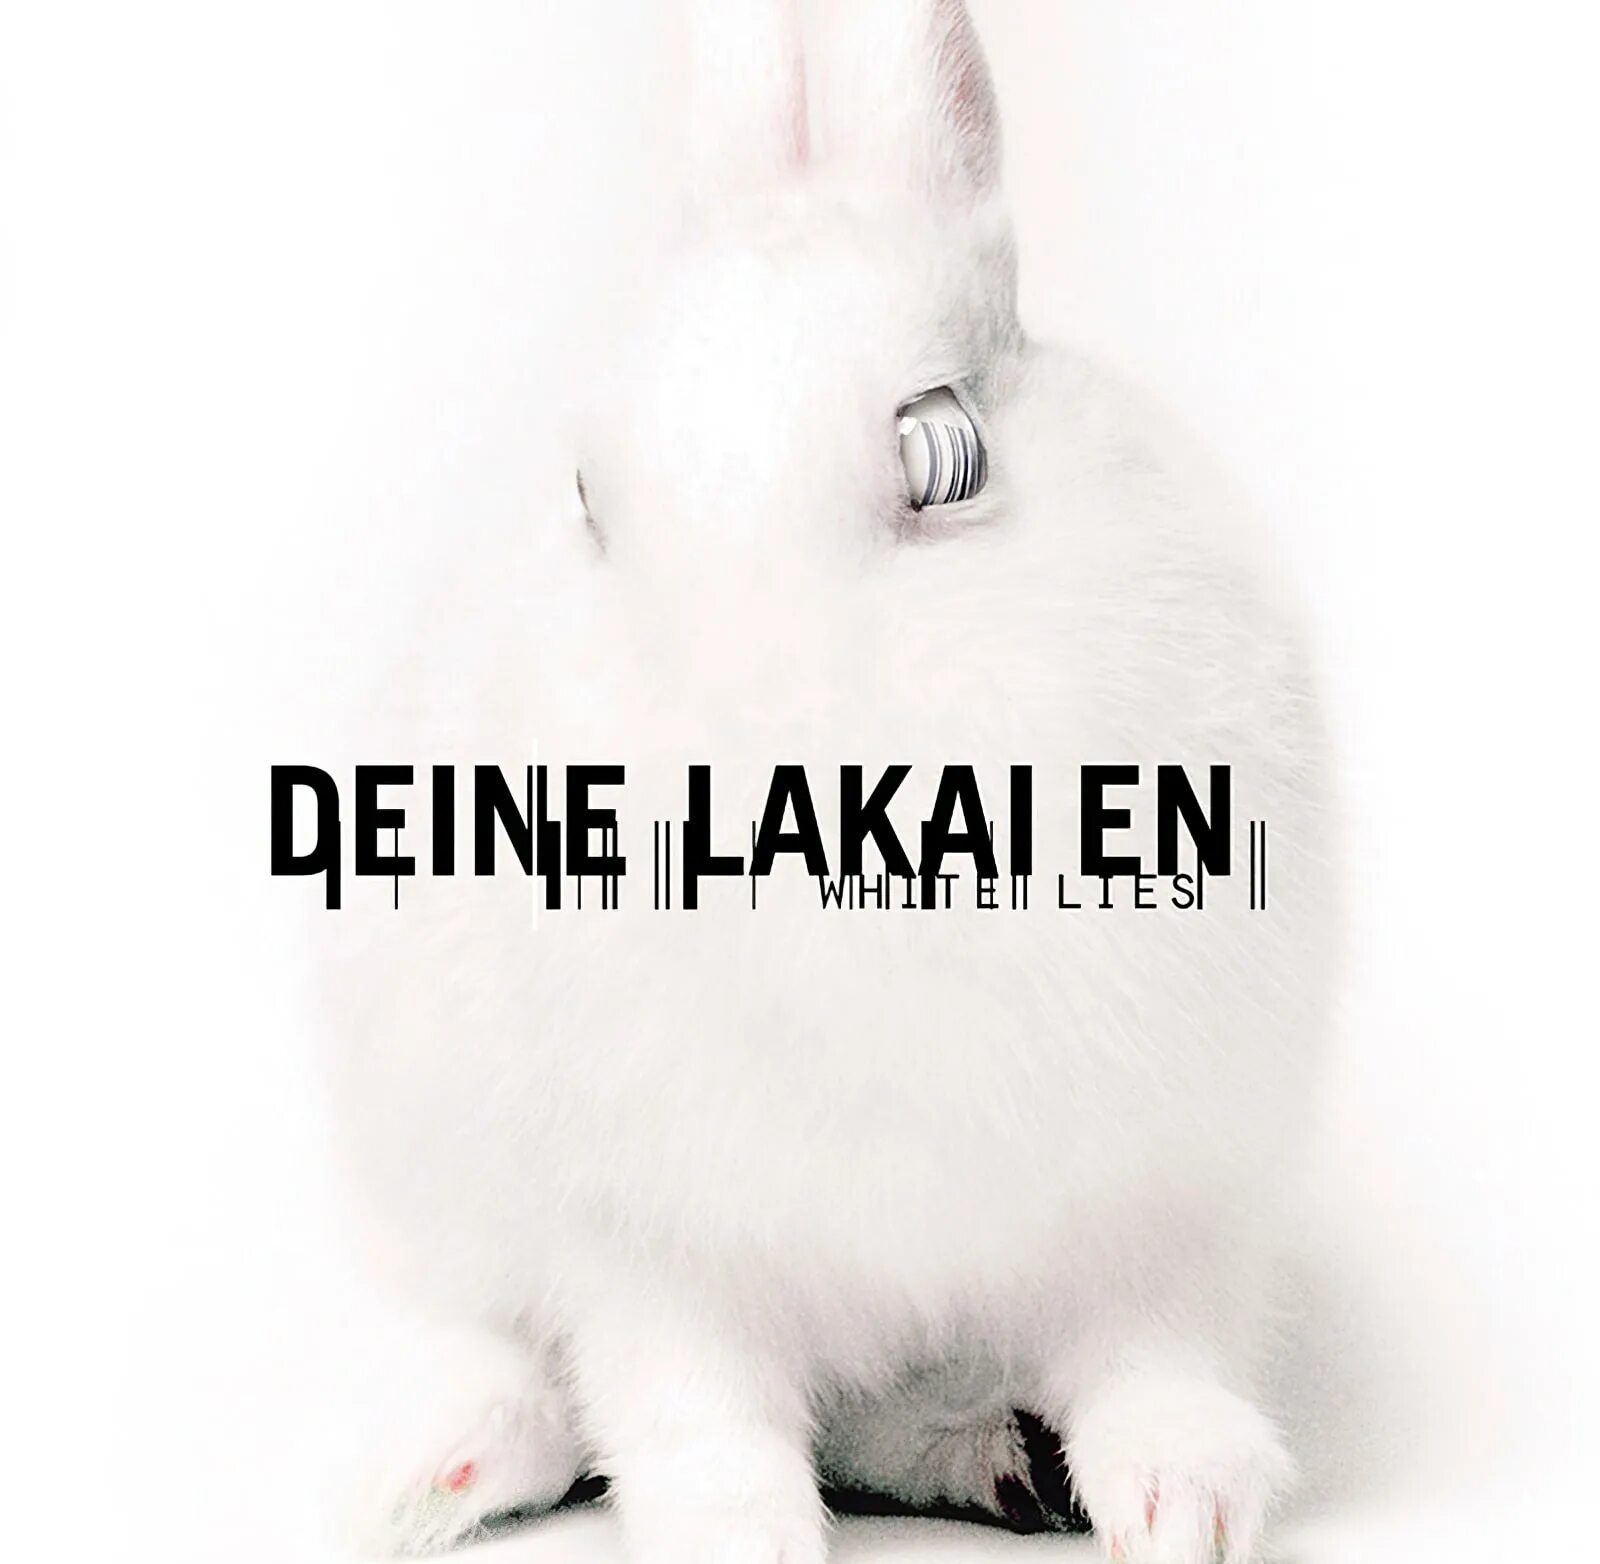 Deine Lakaien логотип. Deine Lakaien дискография. Deine Lakaien обложки. Deine Lakaien_-_where you are. Невинные обманы